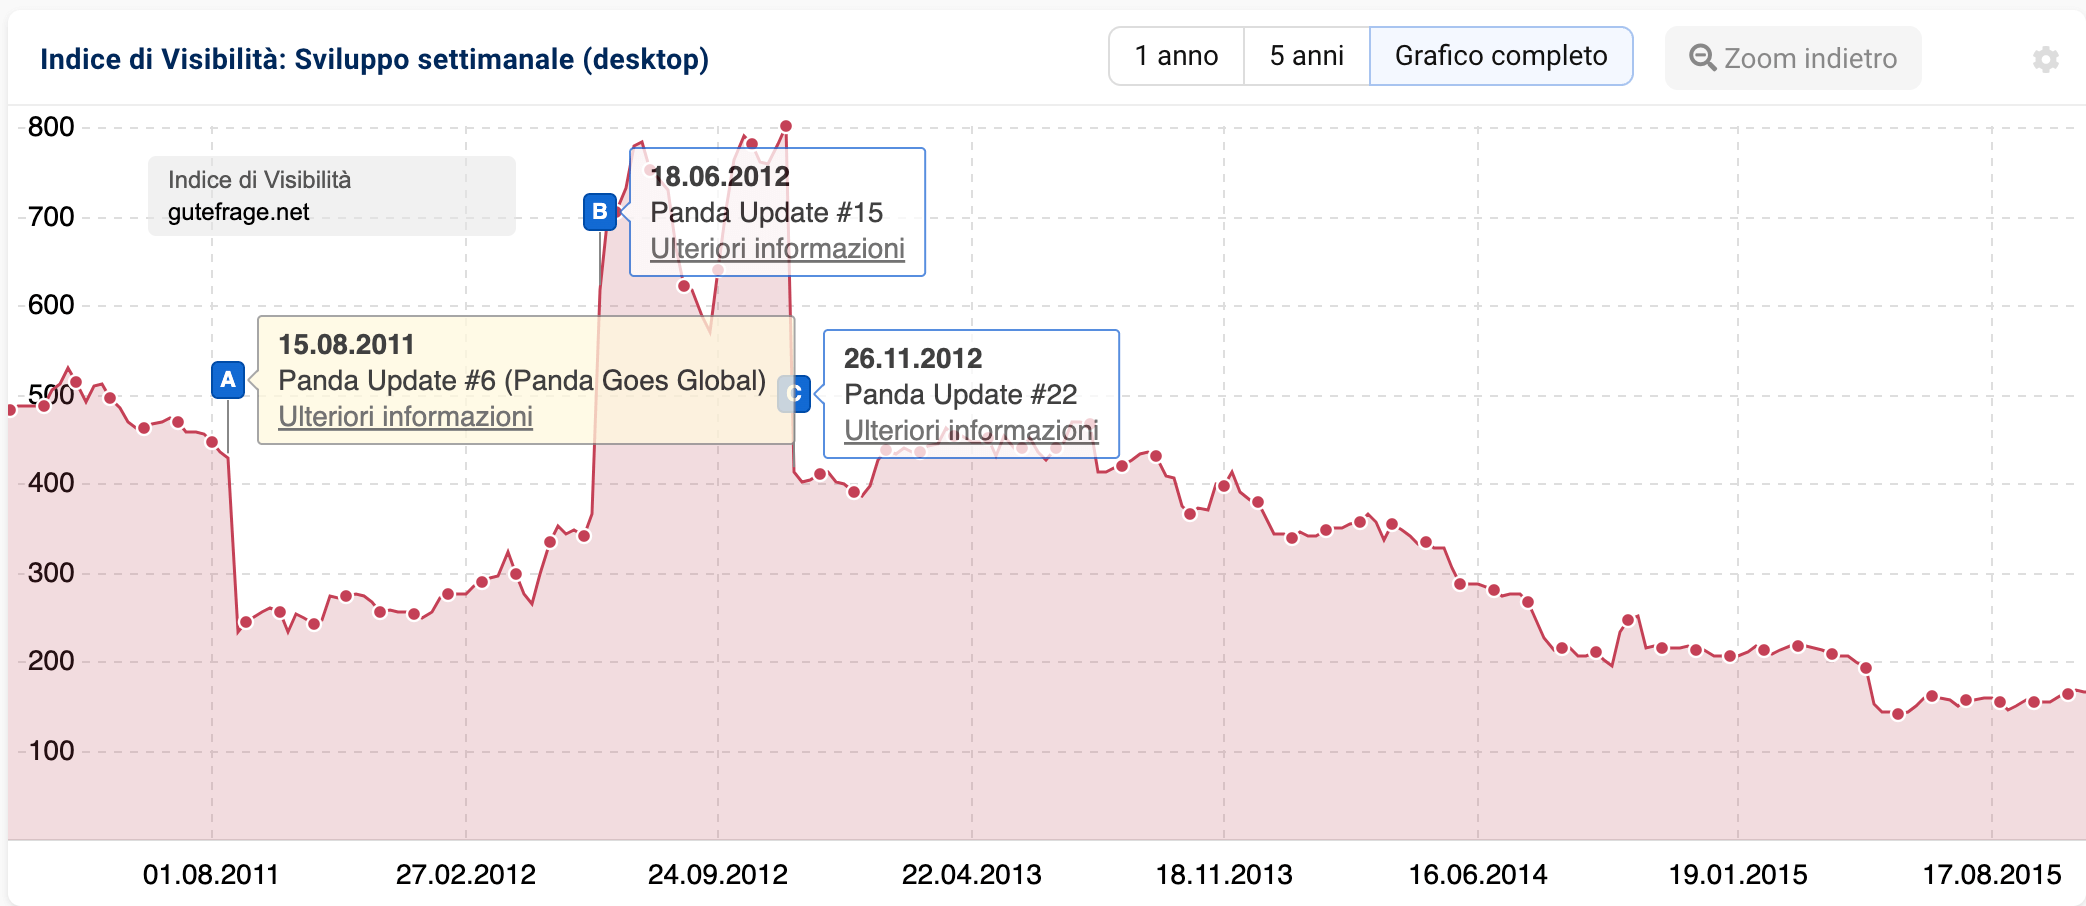 Indice di visibilità del dominio gutefrage.net mostra gli effetti dell'aggiornamento Panda e i corrispondenti aggiornamenti dei dati in base ai pin eventi.